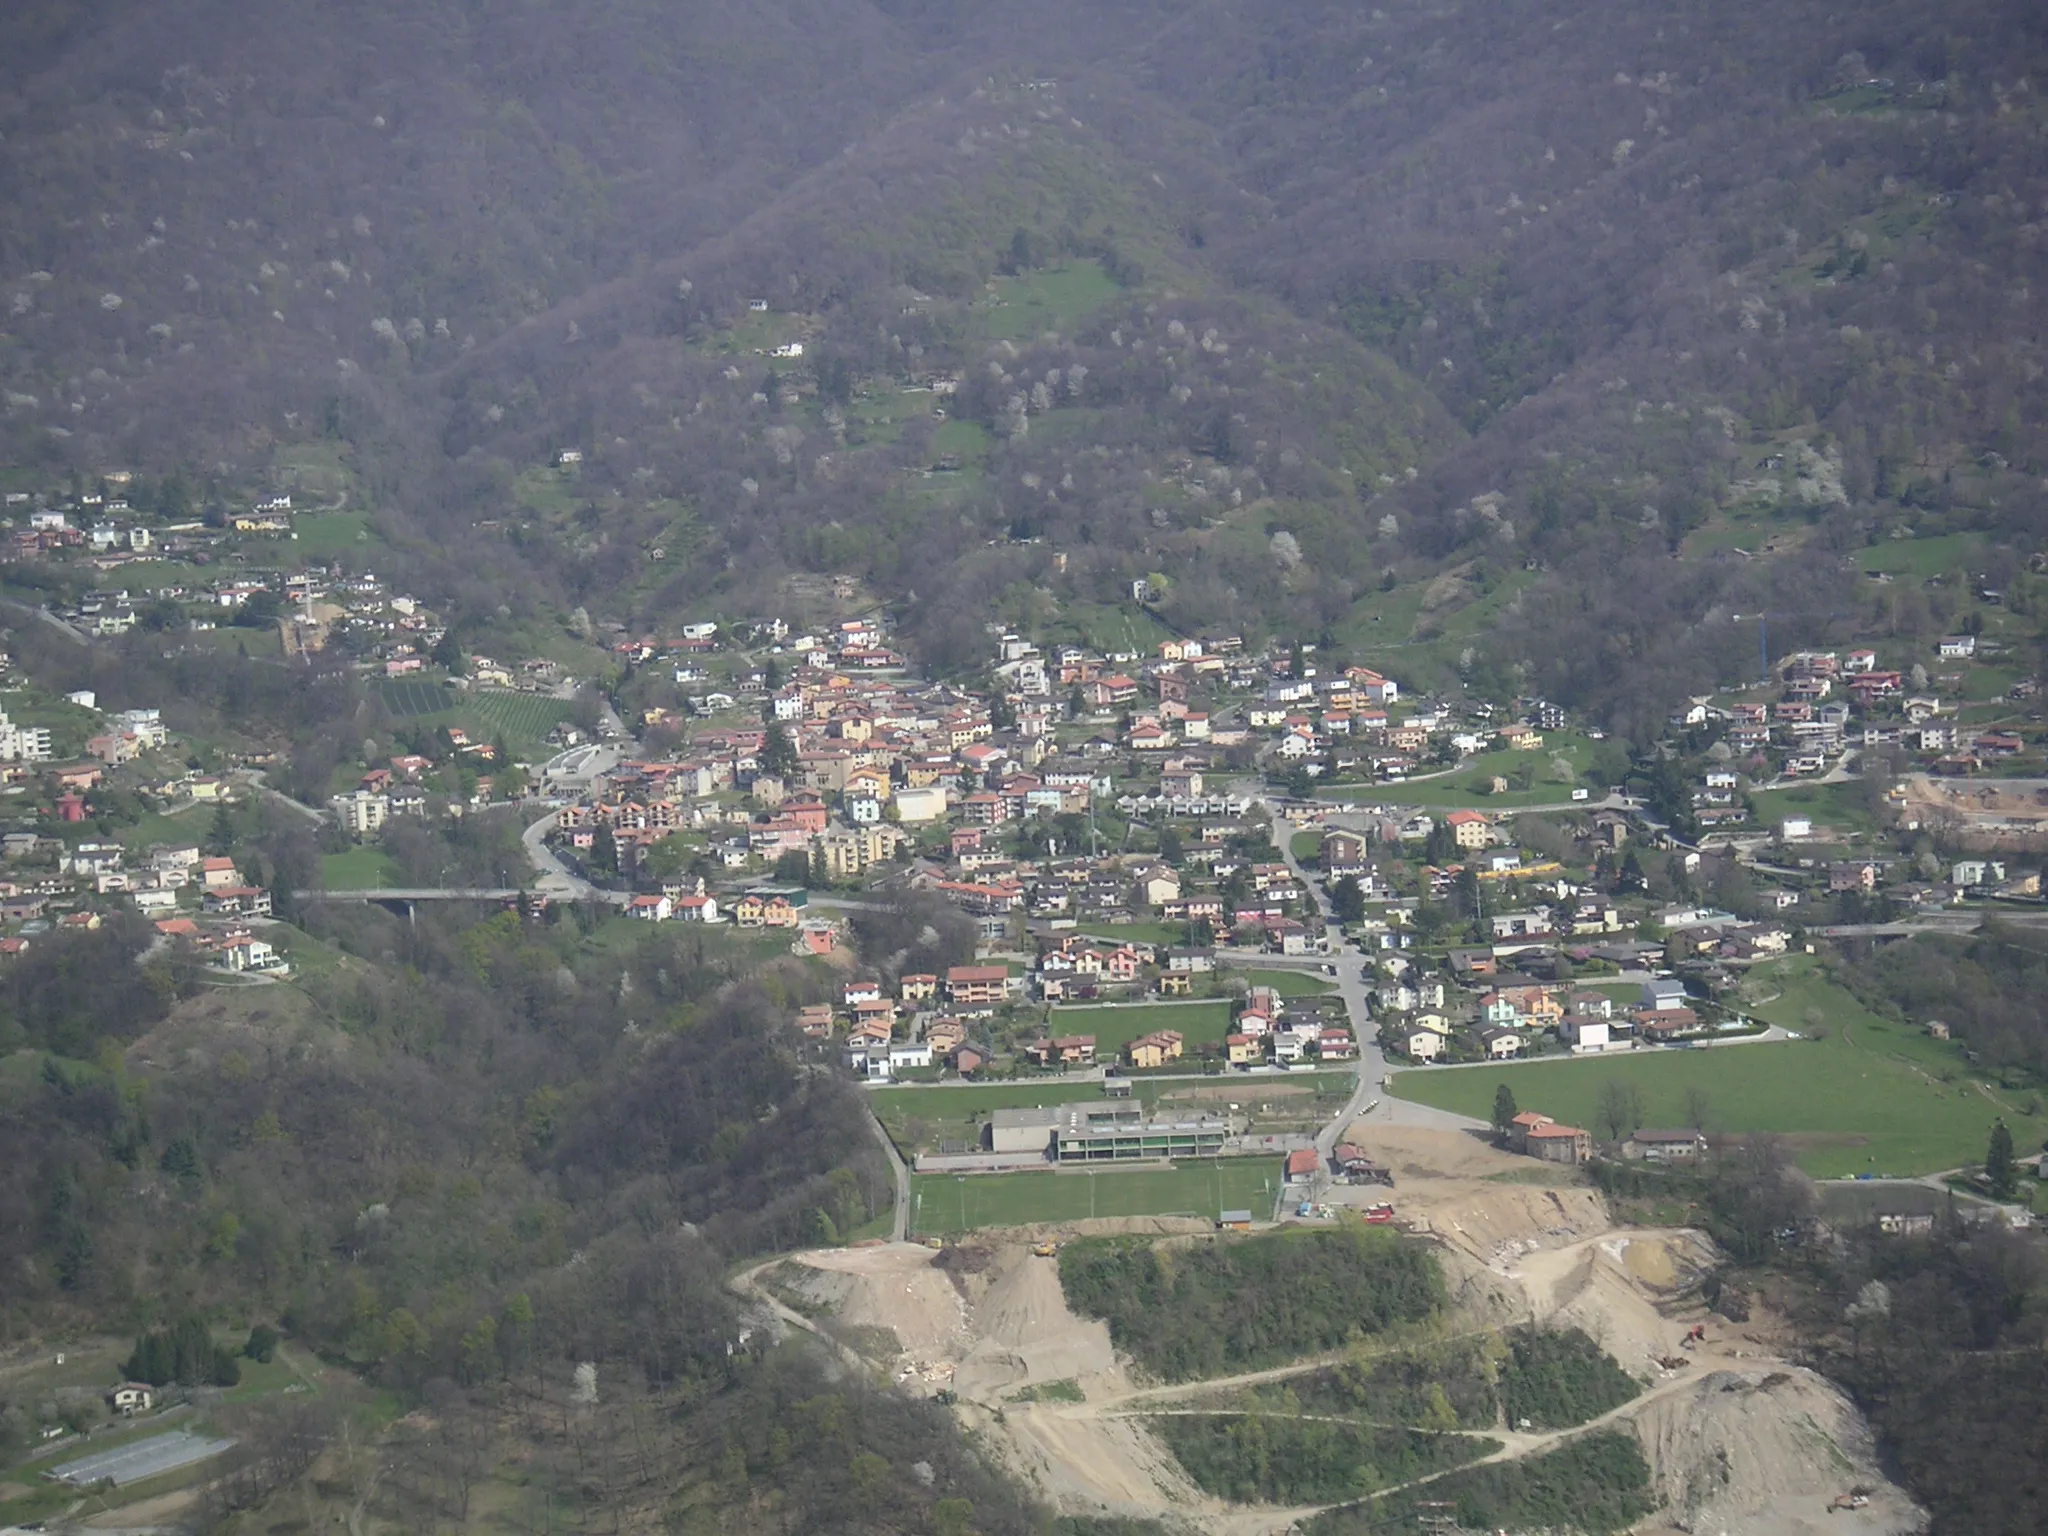 Obrázok Ticino